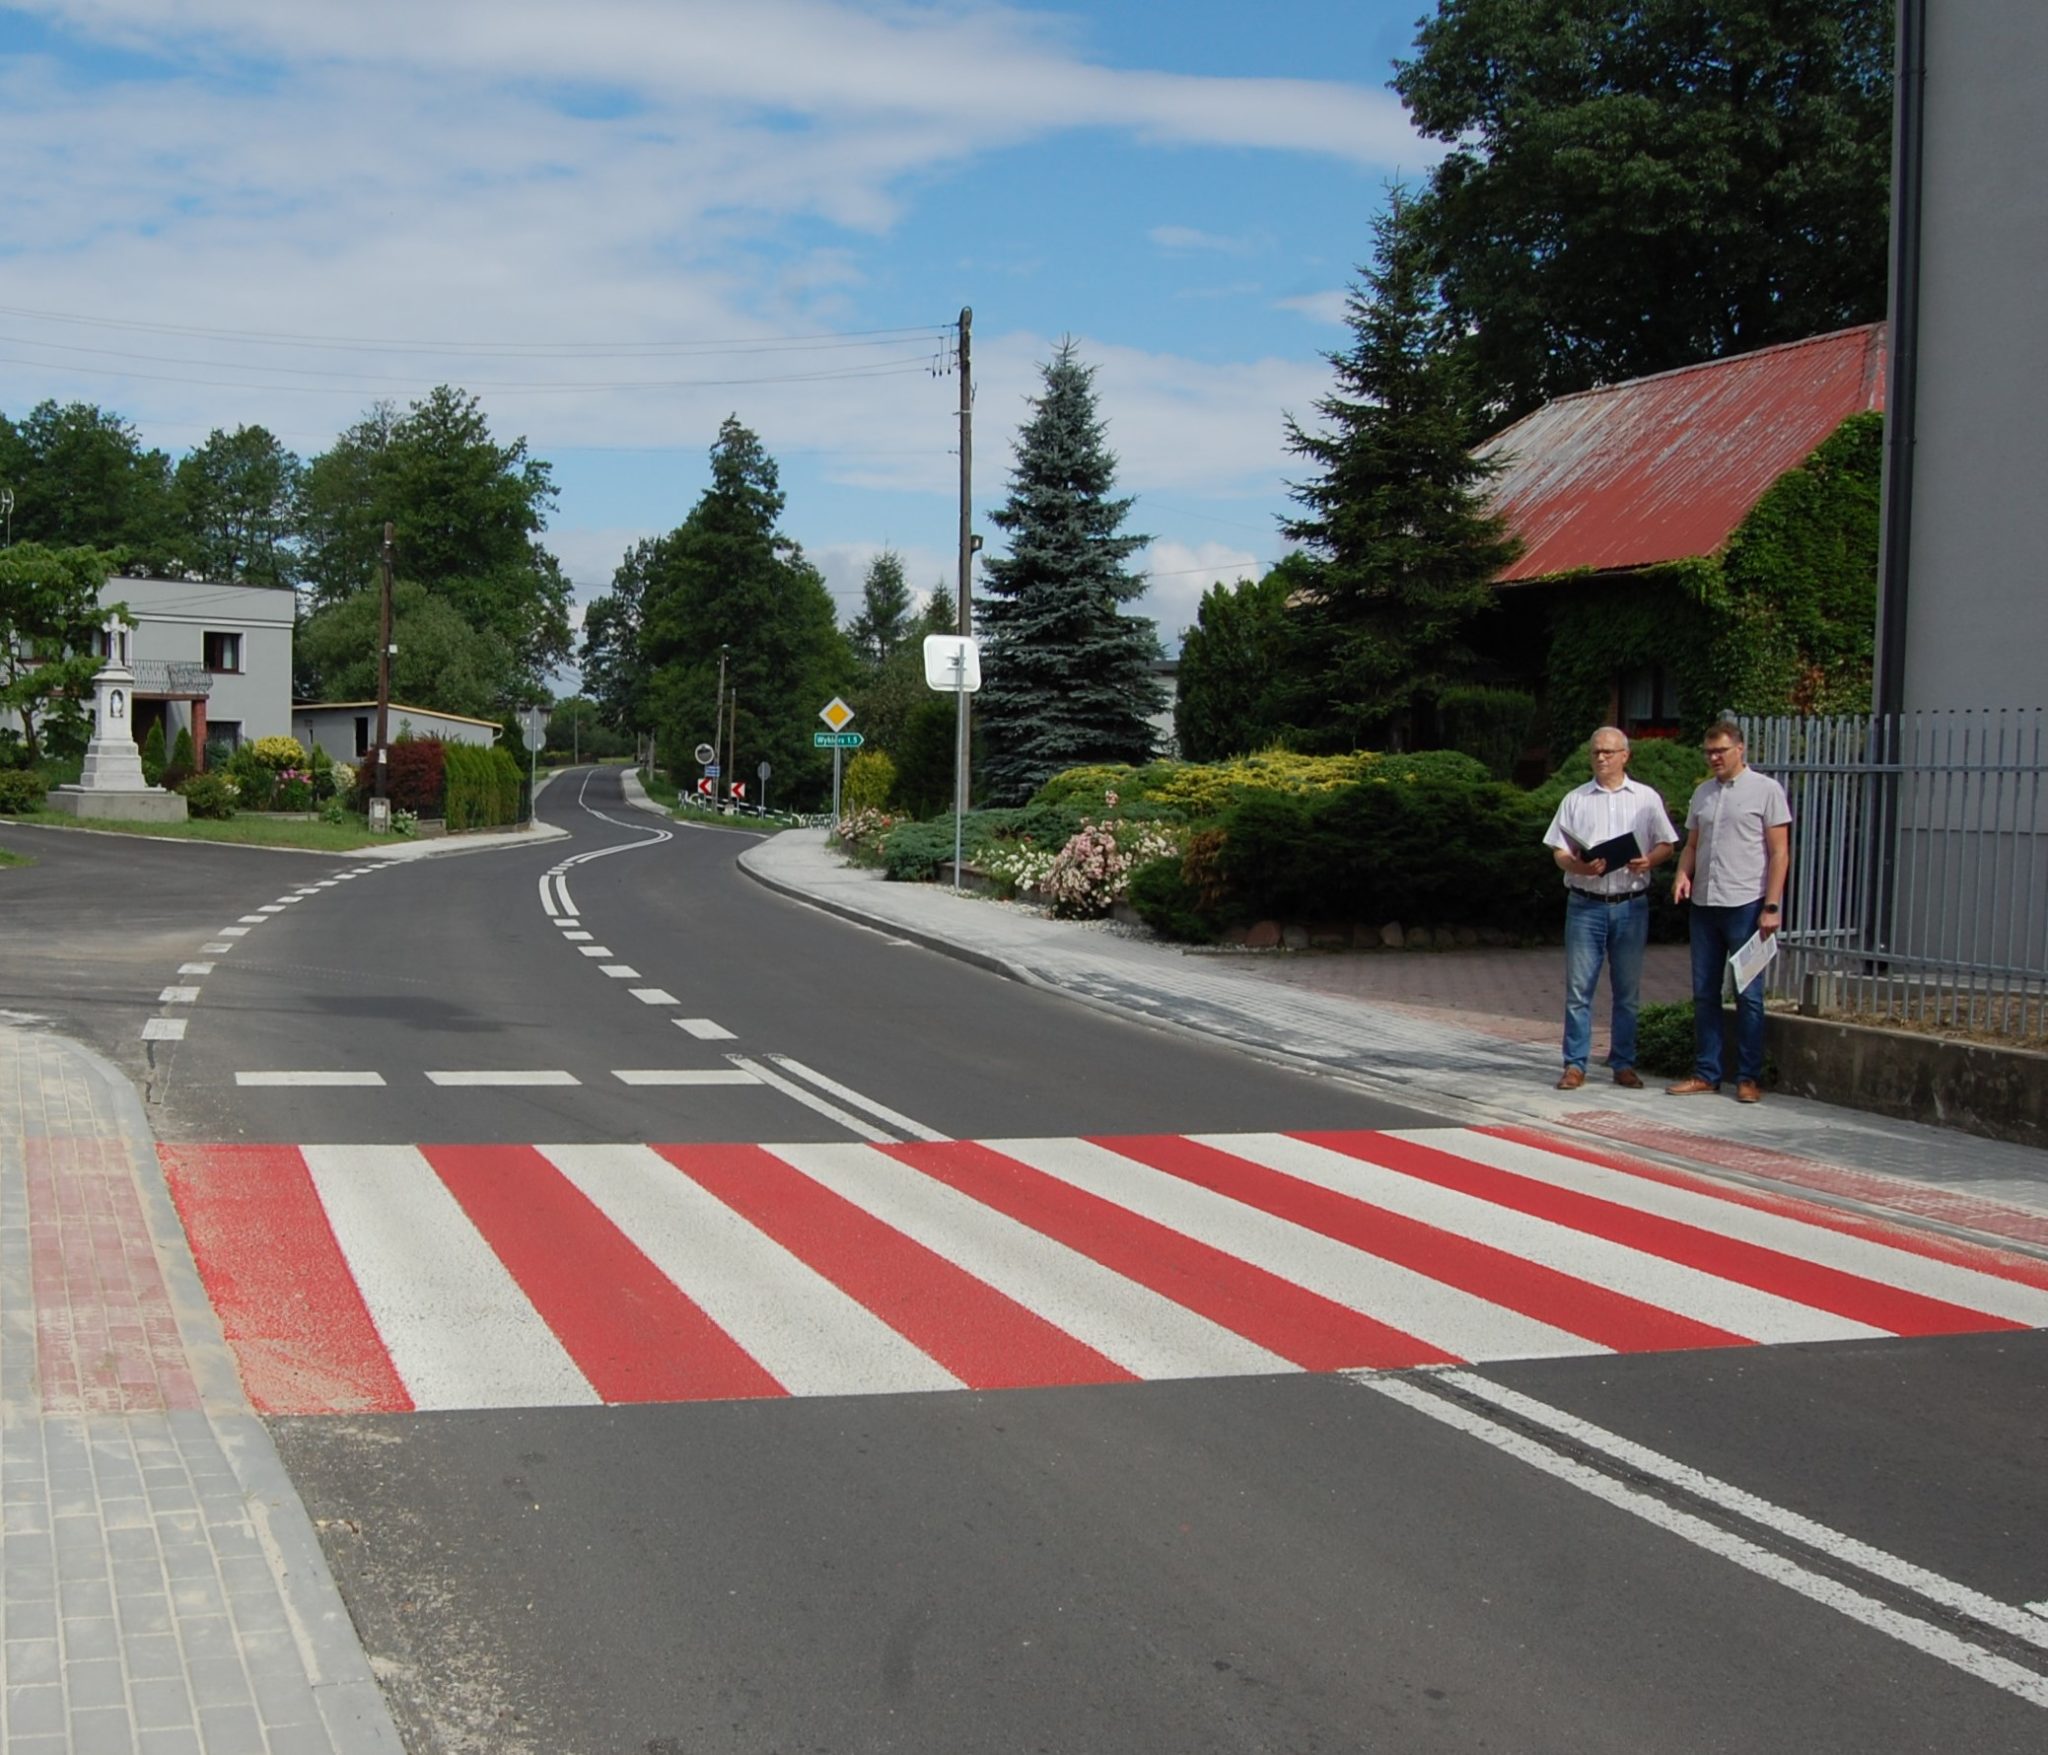 droga asfaltowa z oznakowanym przejściem dla pieszych przy którym stoją dwaj mężczyźni